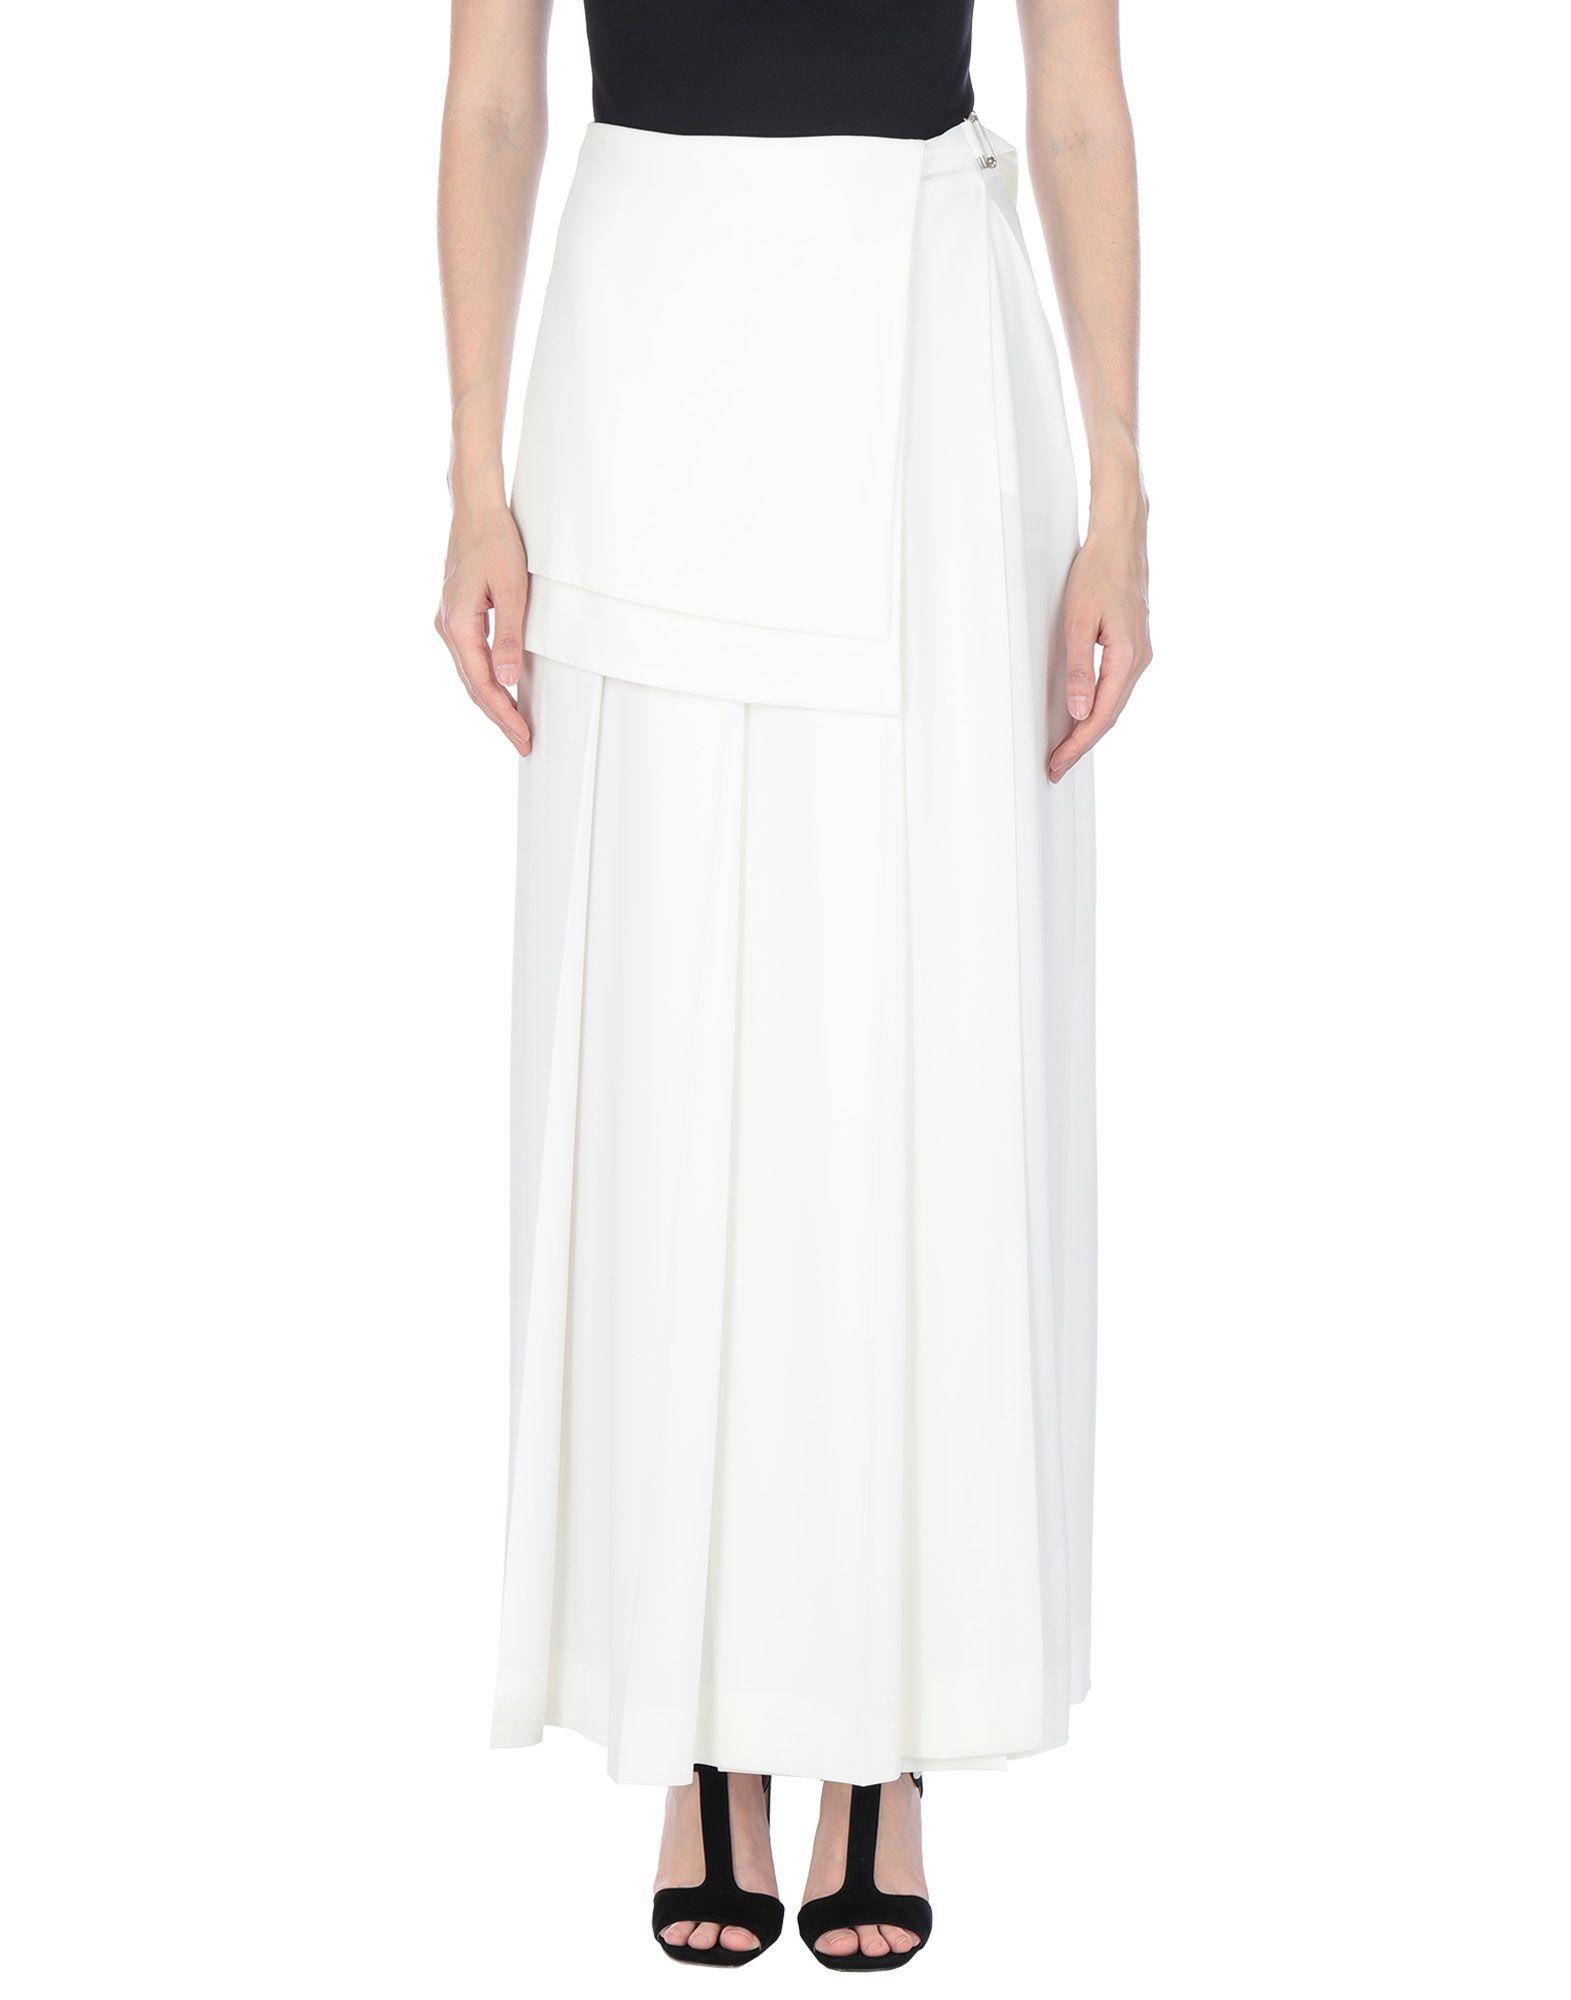 Off-White c/o Virgil Abloh Long Skirt in White - Lyst